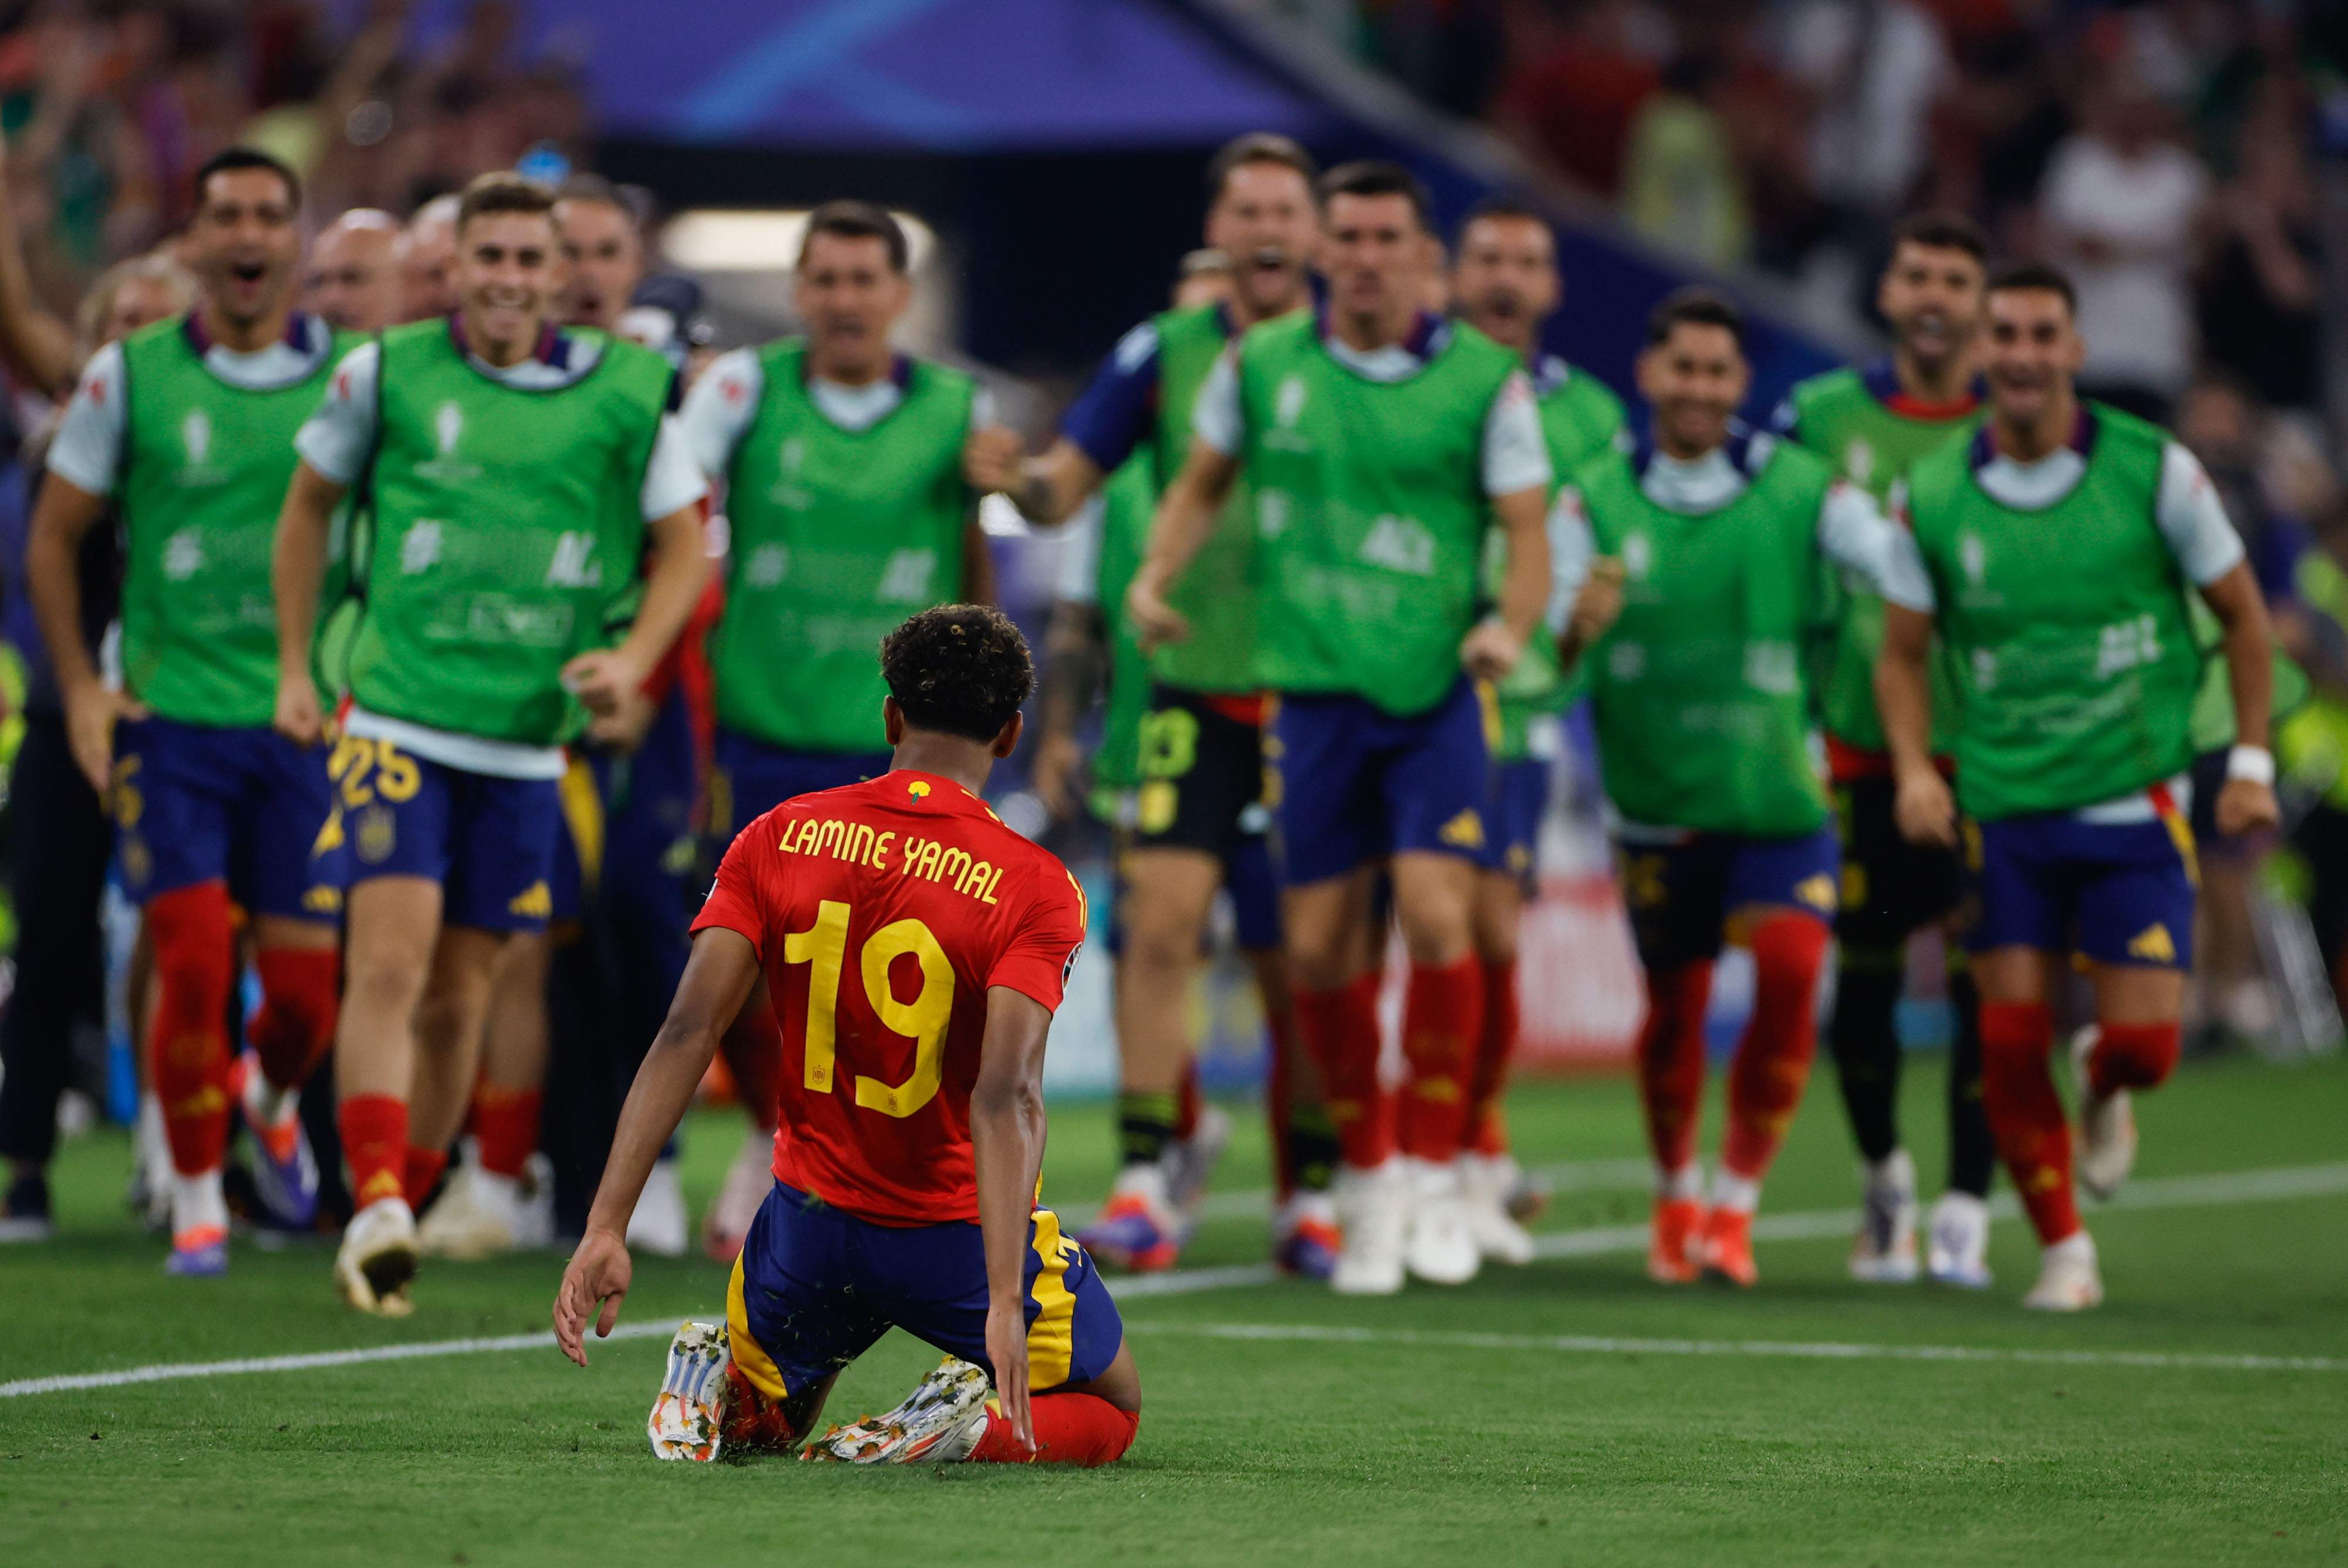 Una selecció espanyola amb molta personalitat remunta contra França (2-1) i jugarà la final de l'Eurocopa